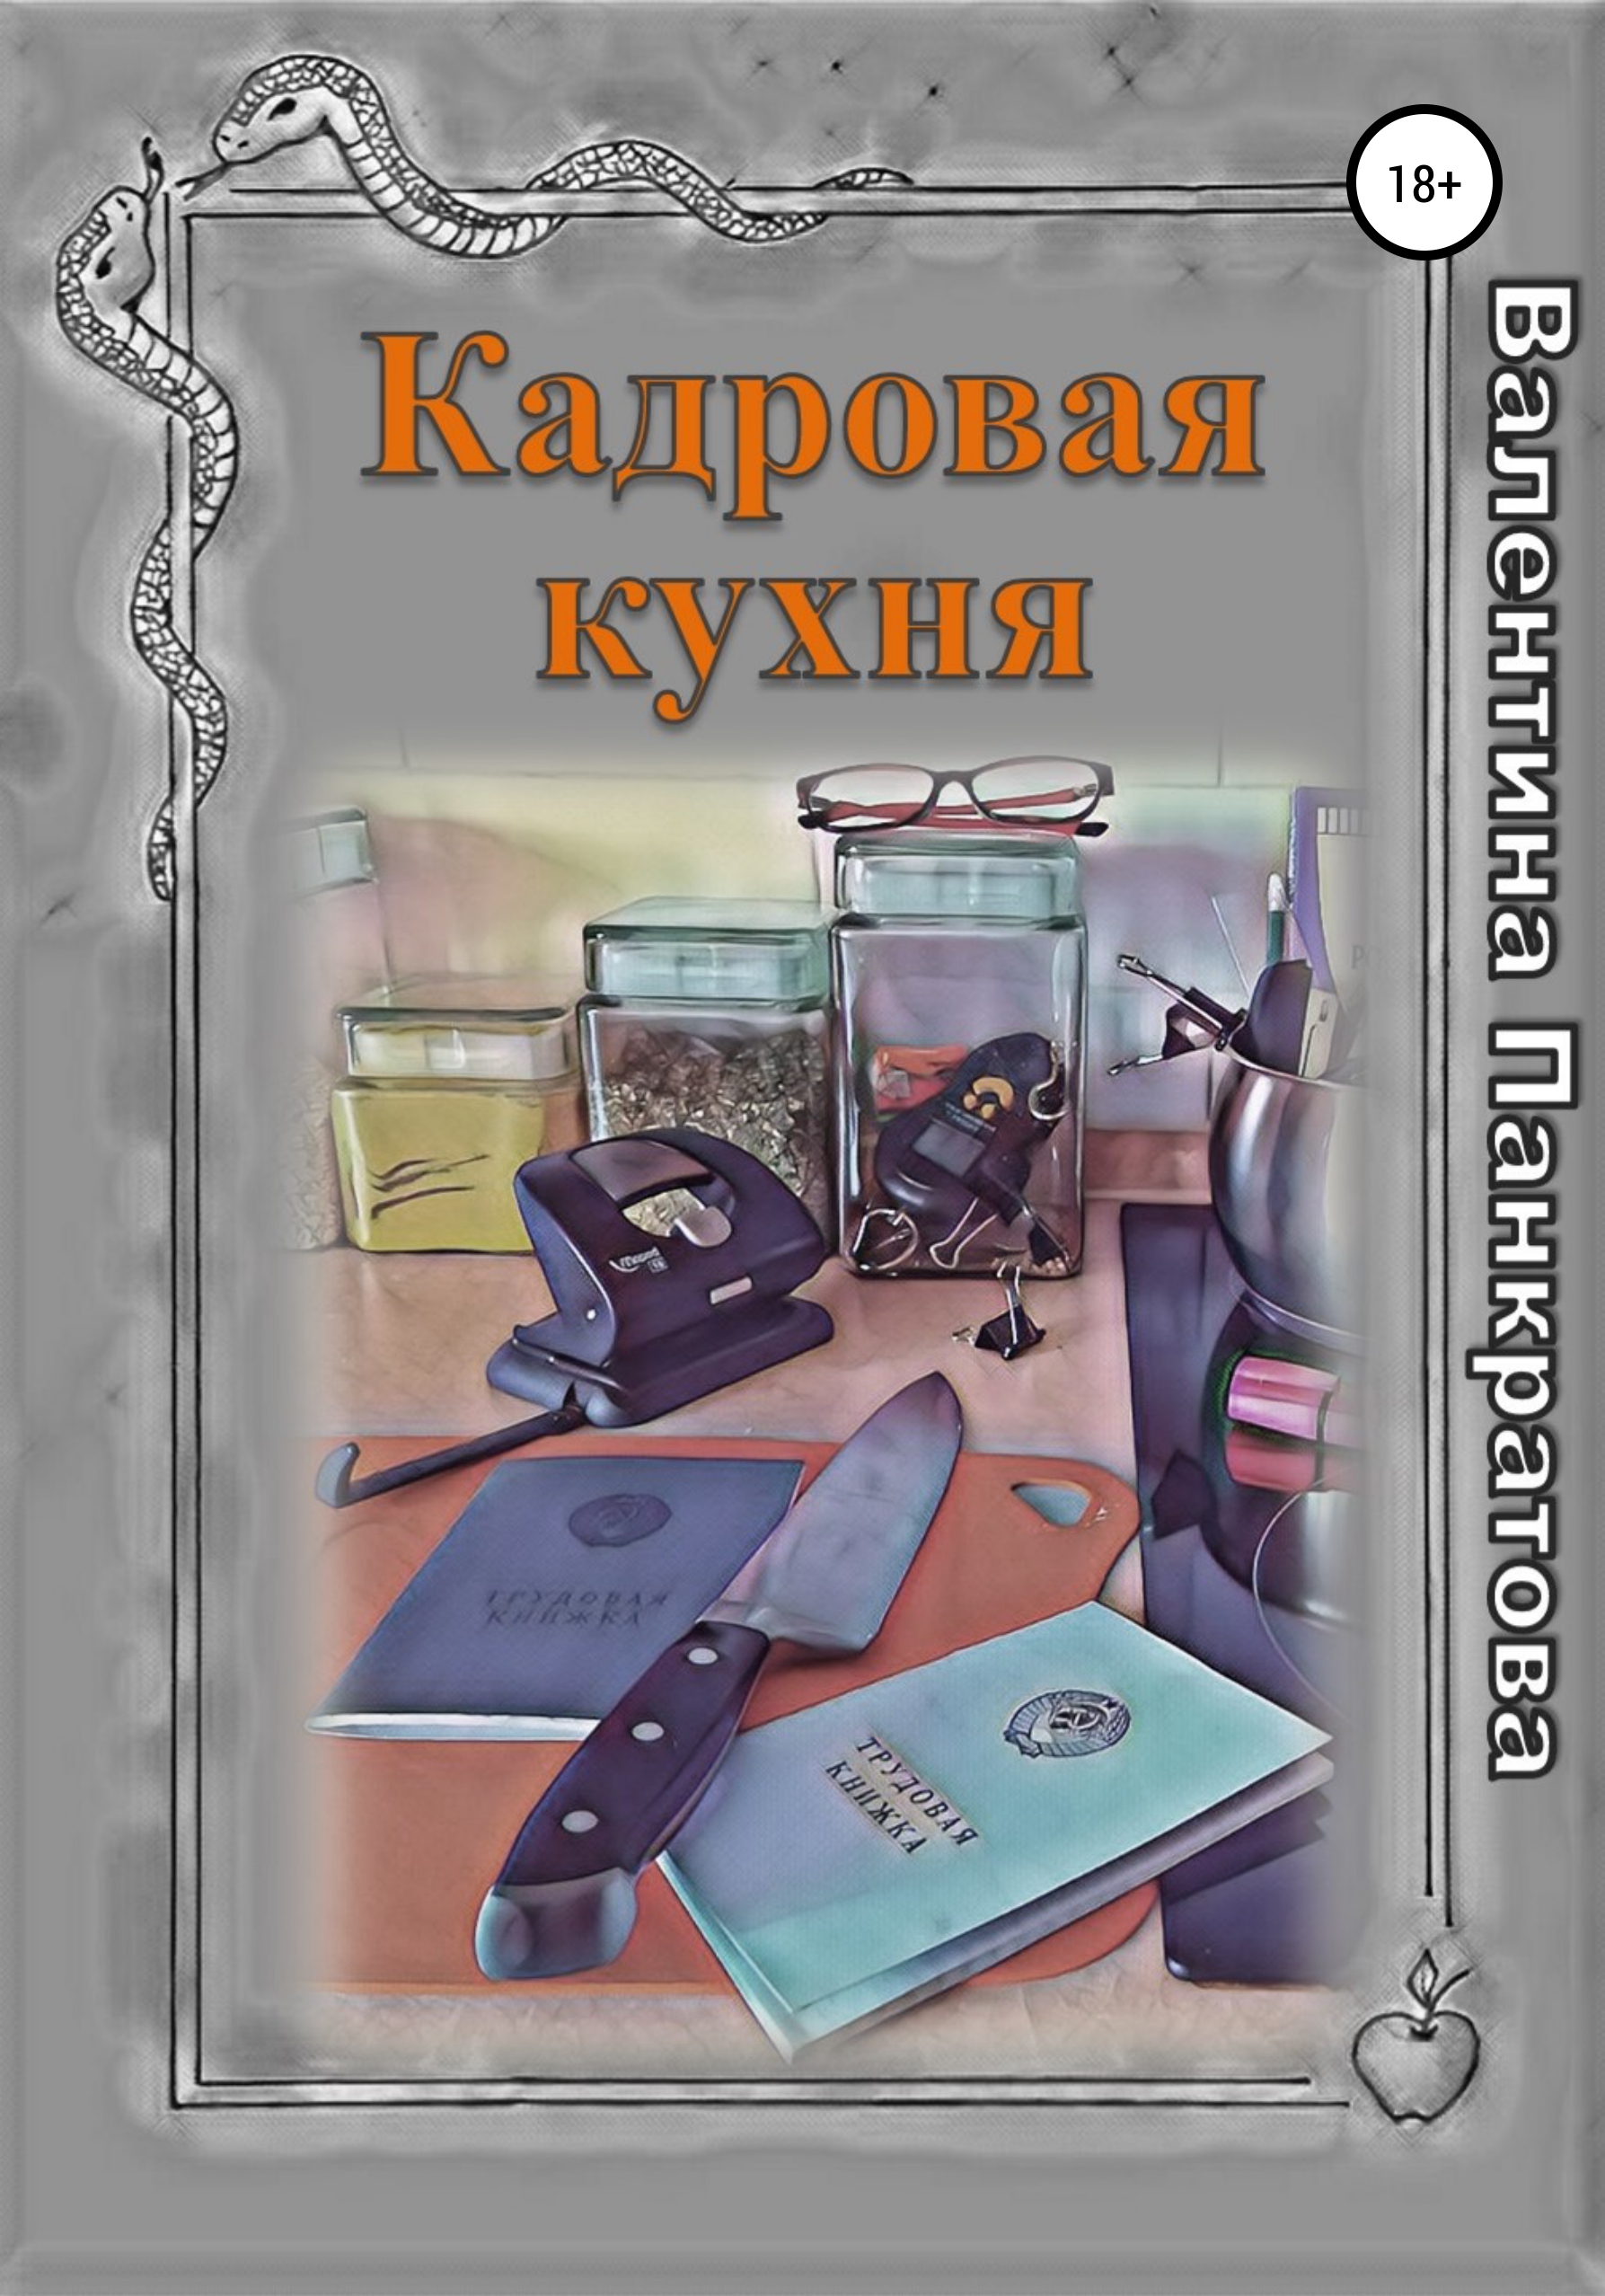 Книга  Кадровая кухня созданная Валентина Панкратова может относится к жанру делопроизводство, личная эффективность, руководства. Стоимость электронной книги Кадровая кухня с идентификатором 67746867 составляет 149.00 руб.